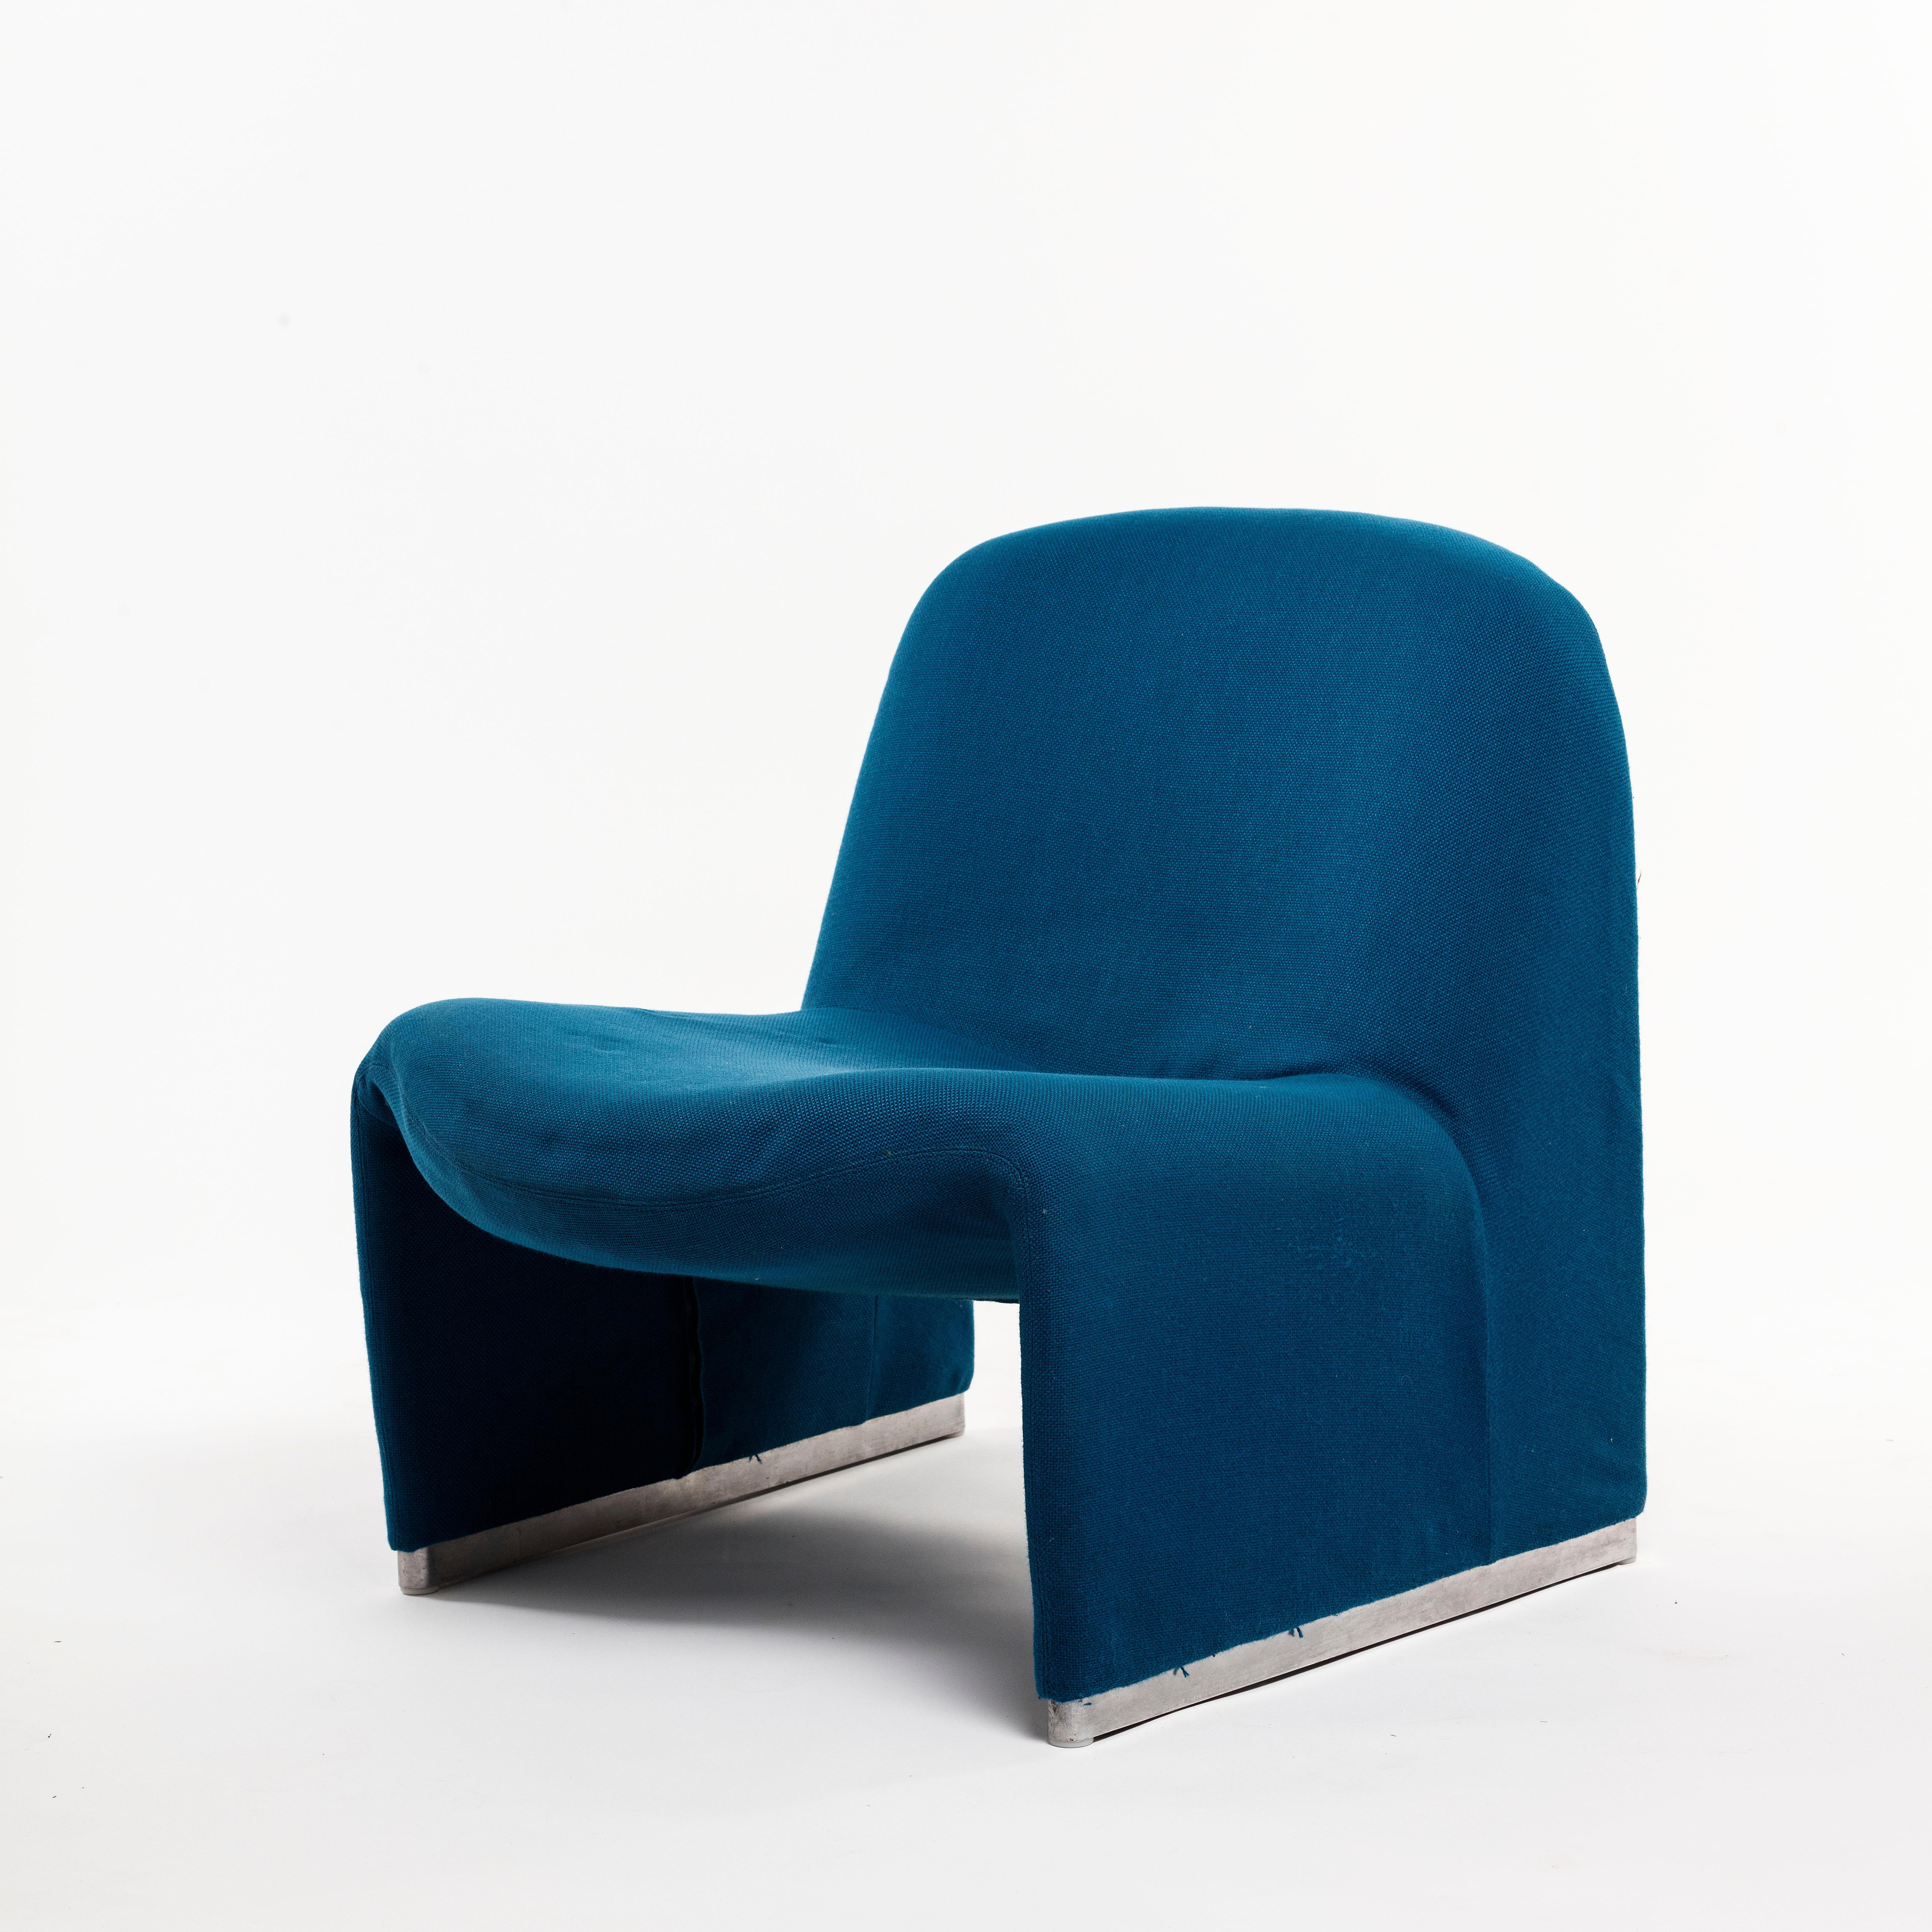 Chaises Alky de Giancarlo Piretti en tapisserie bleue d'origine, Italie 1969

Giancarlo Piretti a conçu ces chaises Alky pour Castelli en 1969. Sculptural, fantastique design moderne dans le tissu bleu d'origine en très bon état vintage.